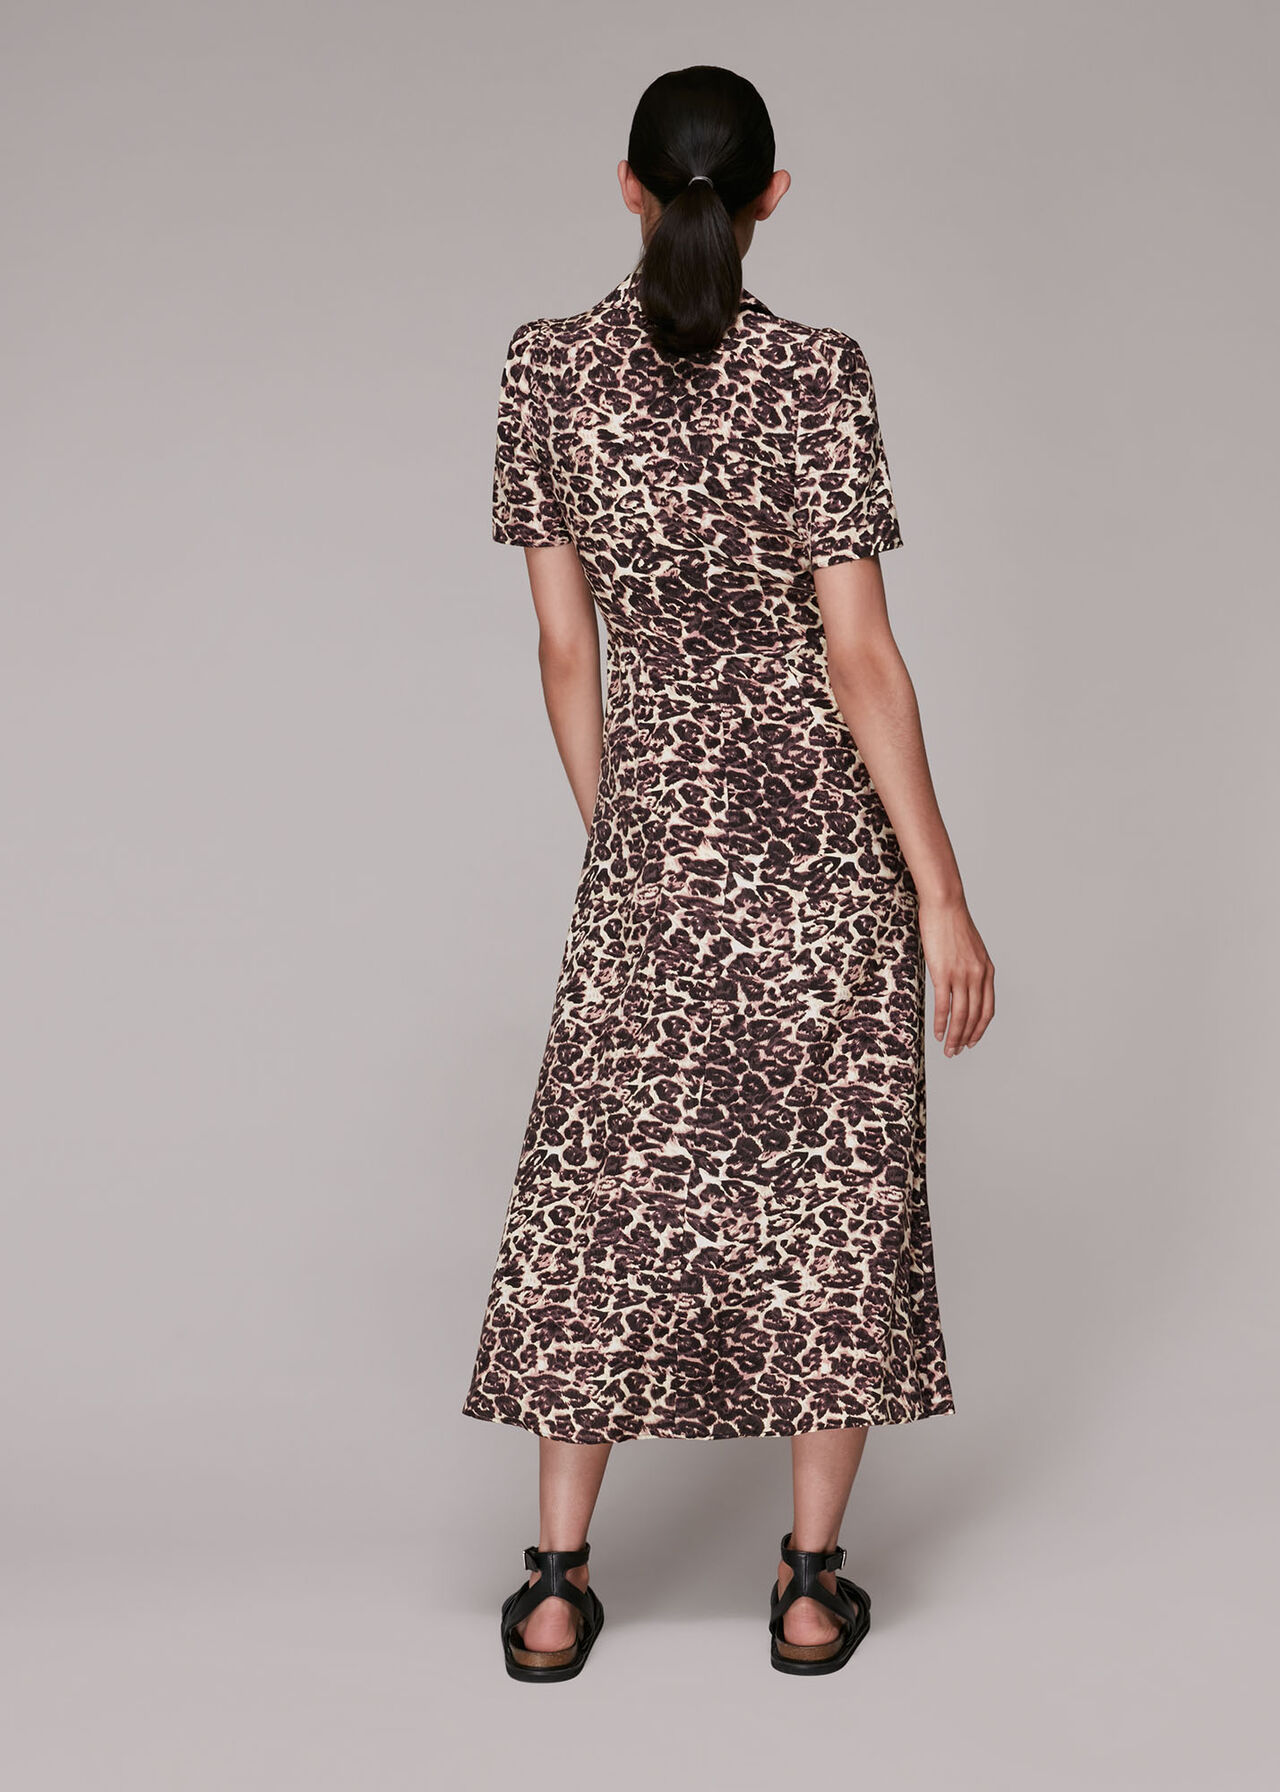 Rowan Clouded Leopard Dress